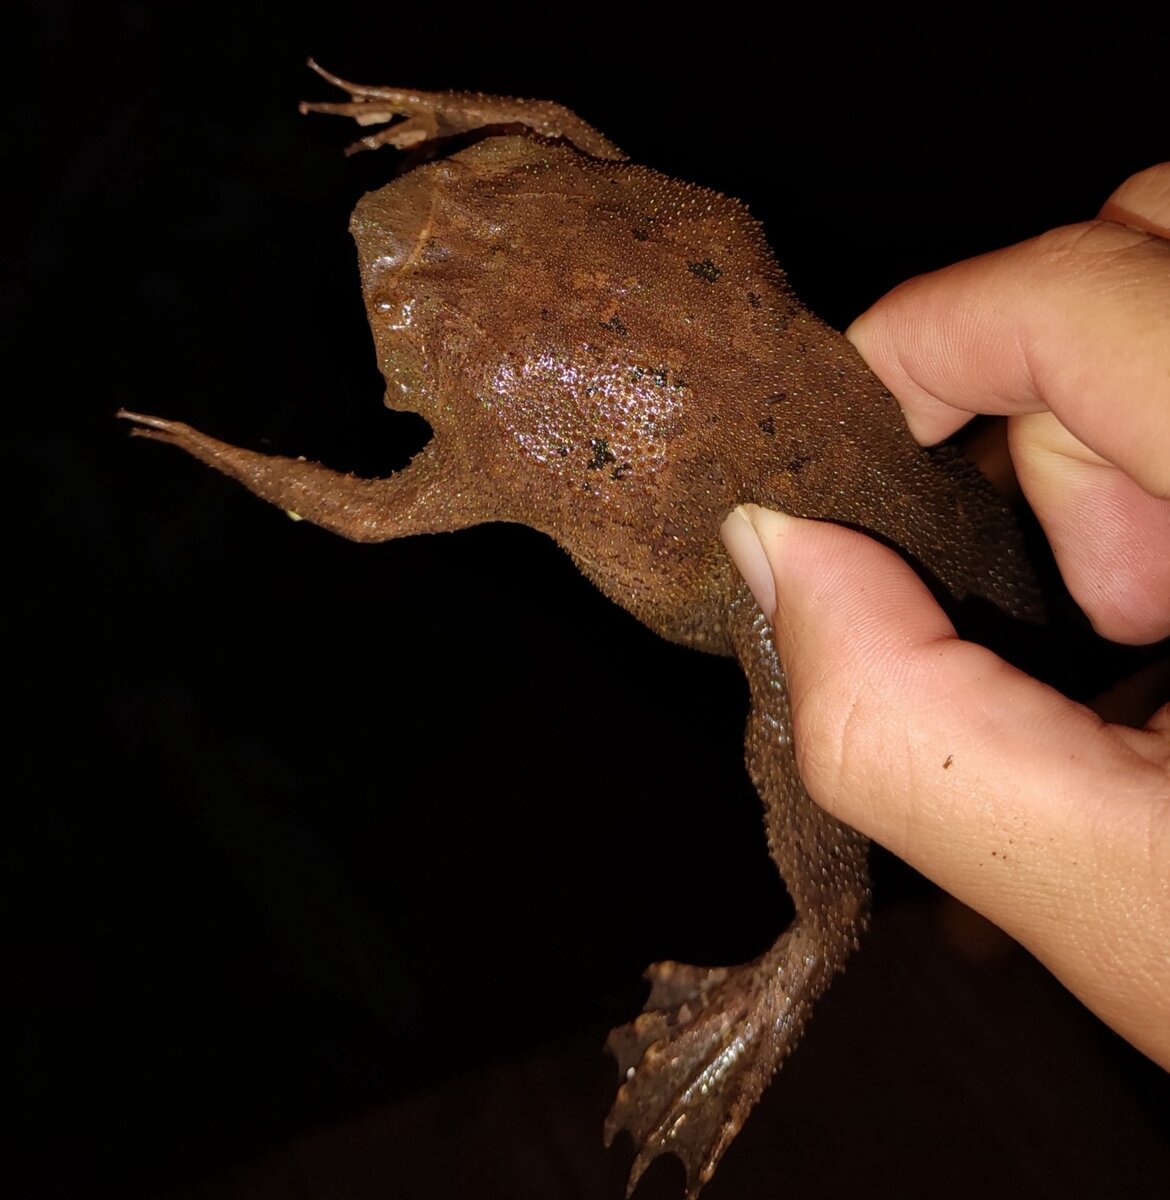 Суринамская пипа: Инкубация жабок внутри спины матери. Эта амфибия похожа на чудной эксперимент пришельцев